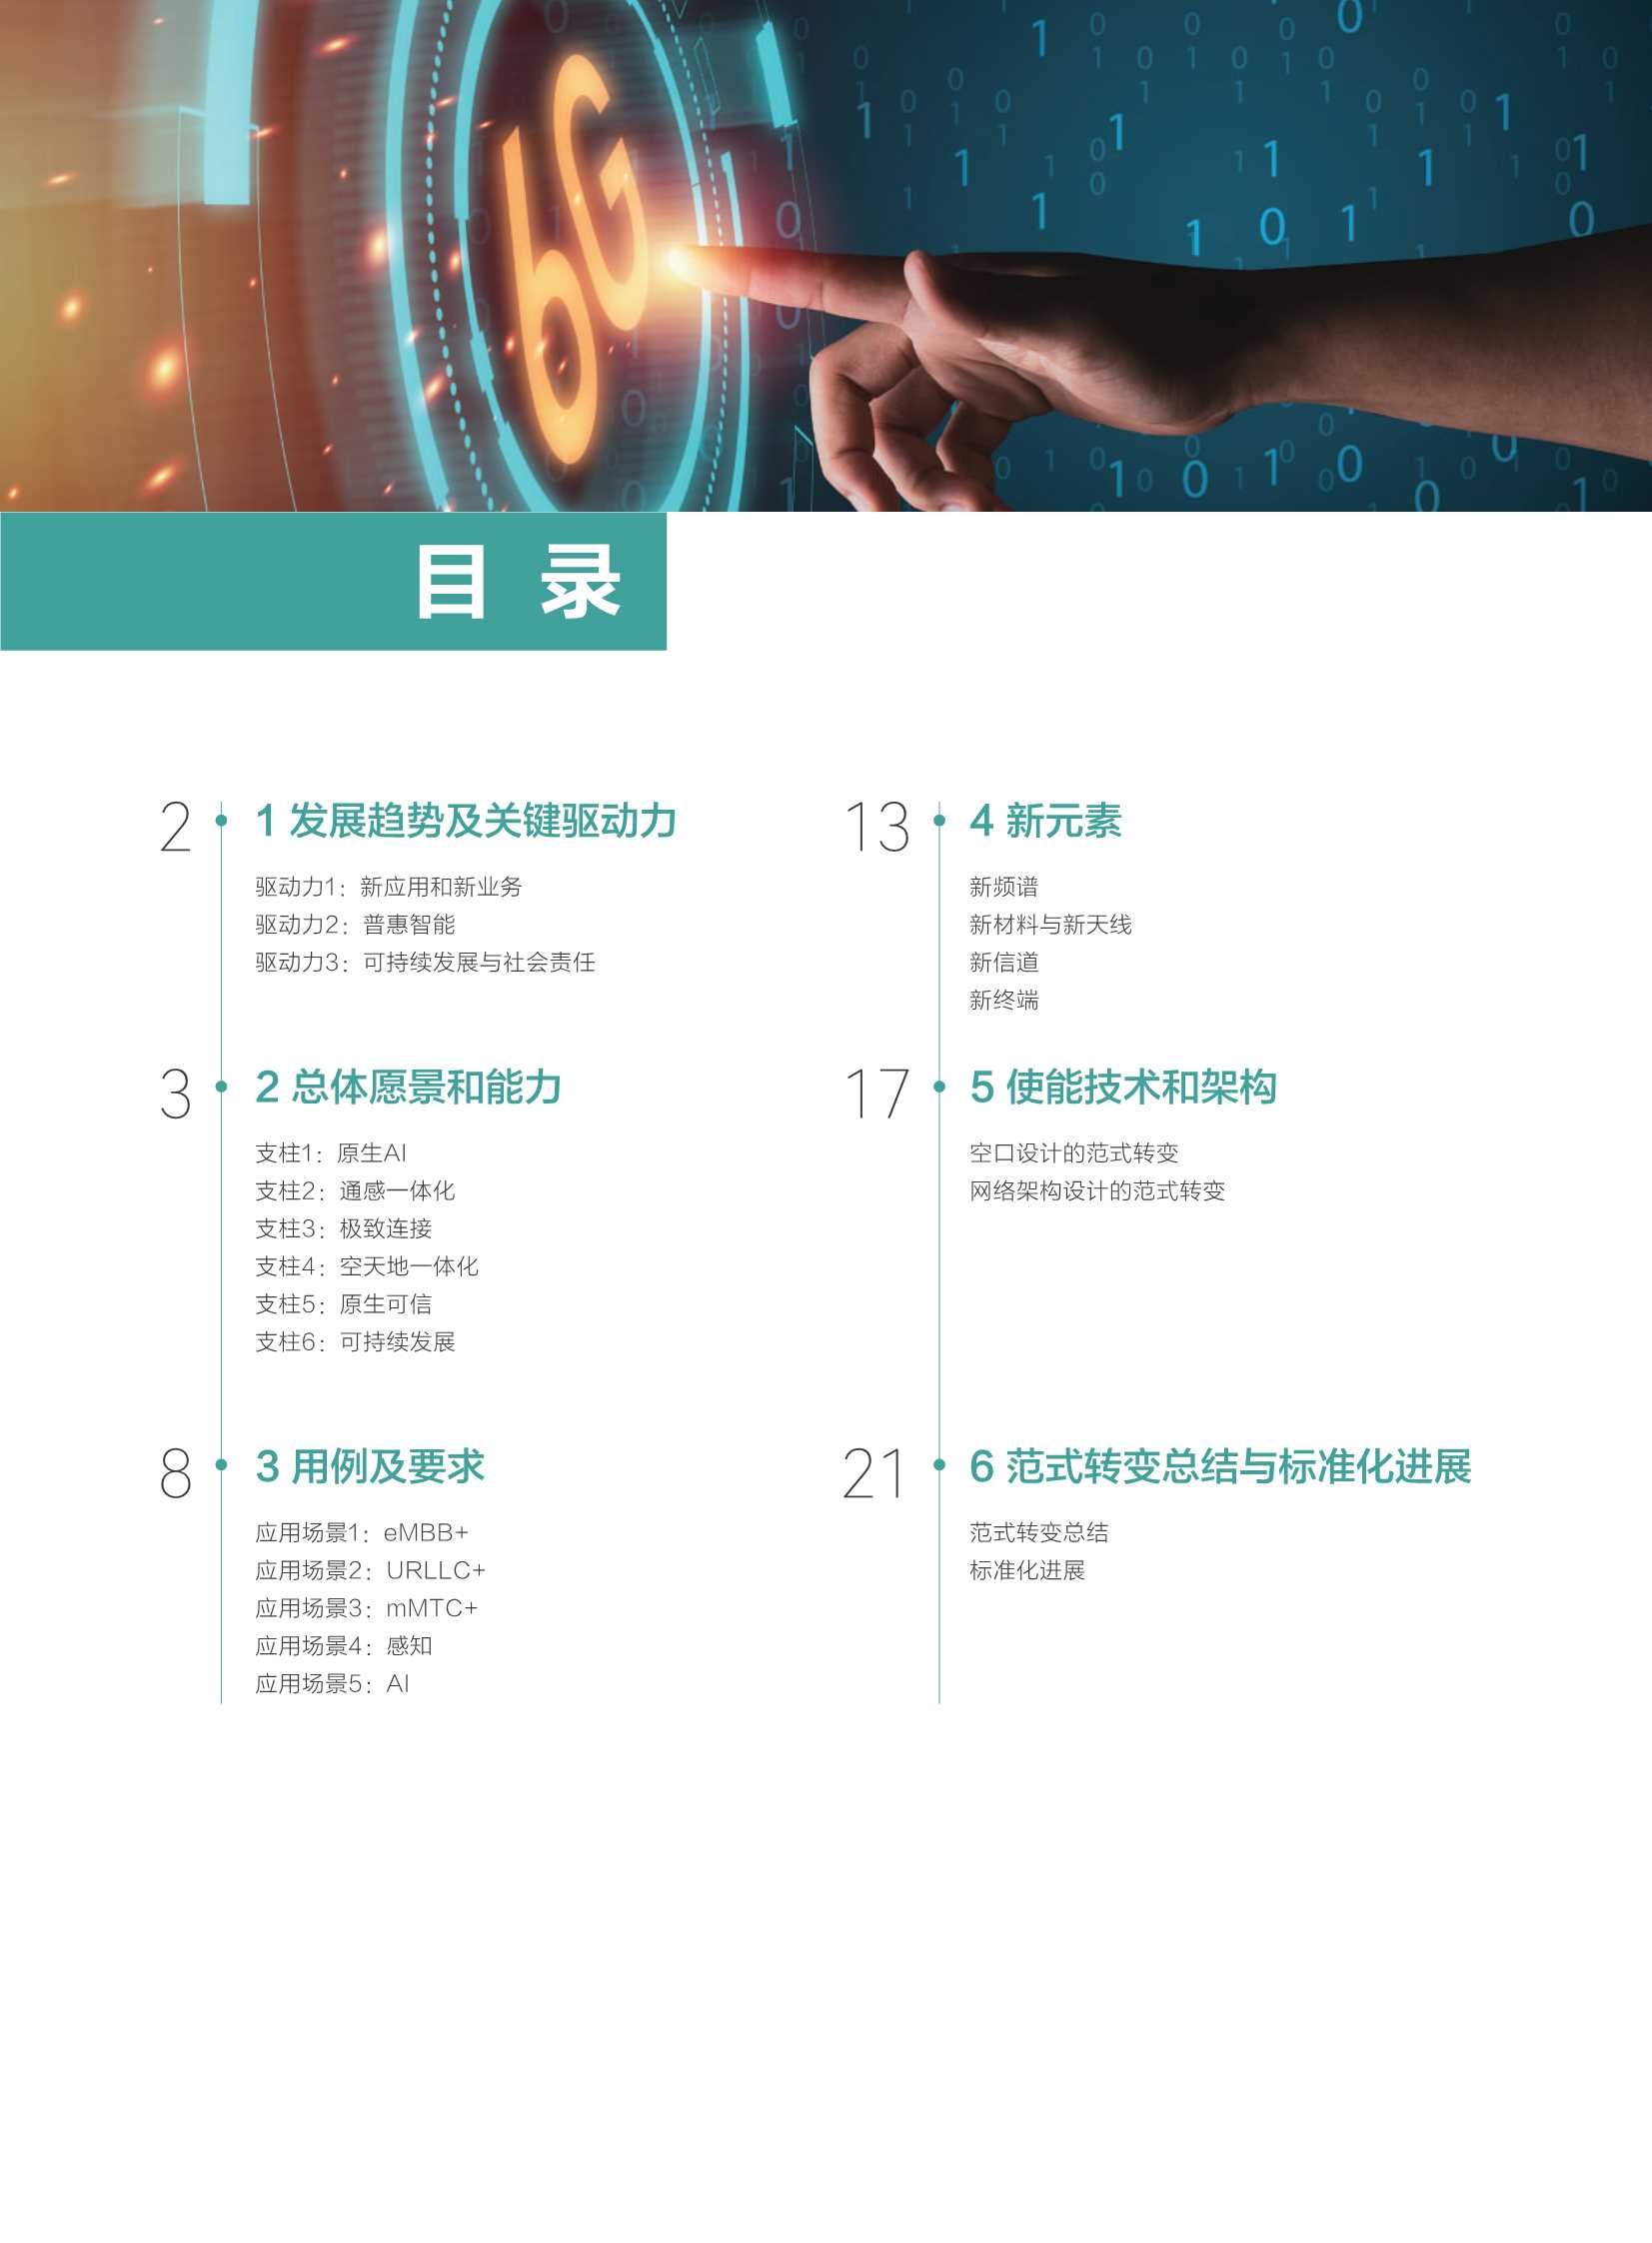 华为-6G：无线通信新征程-2022.02-29页